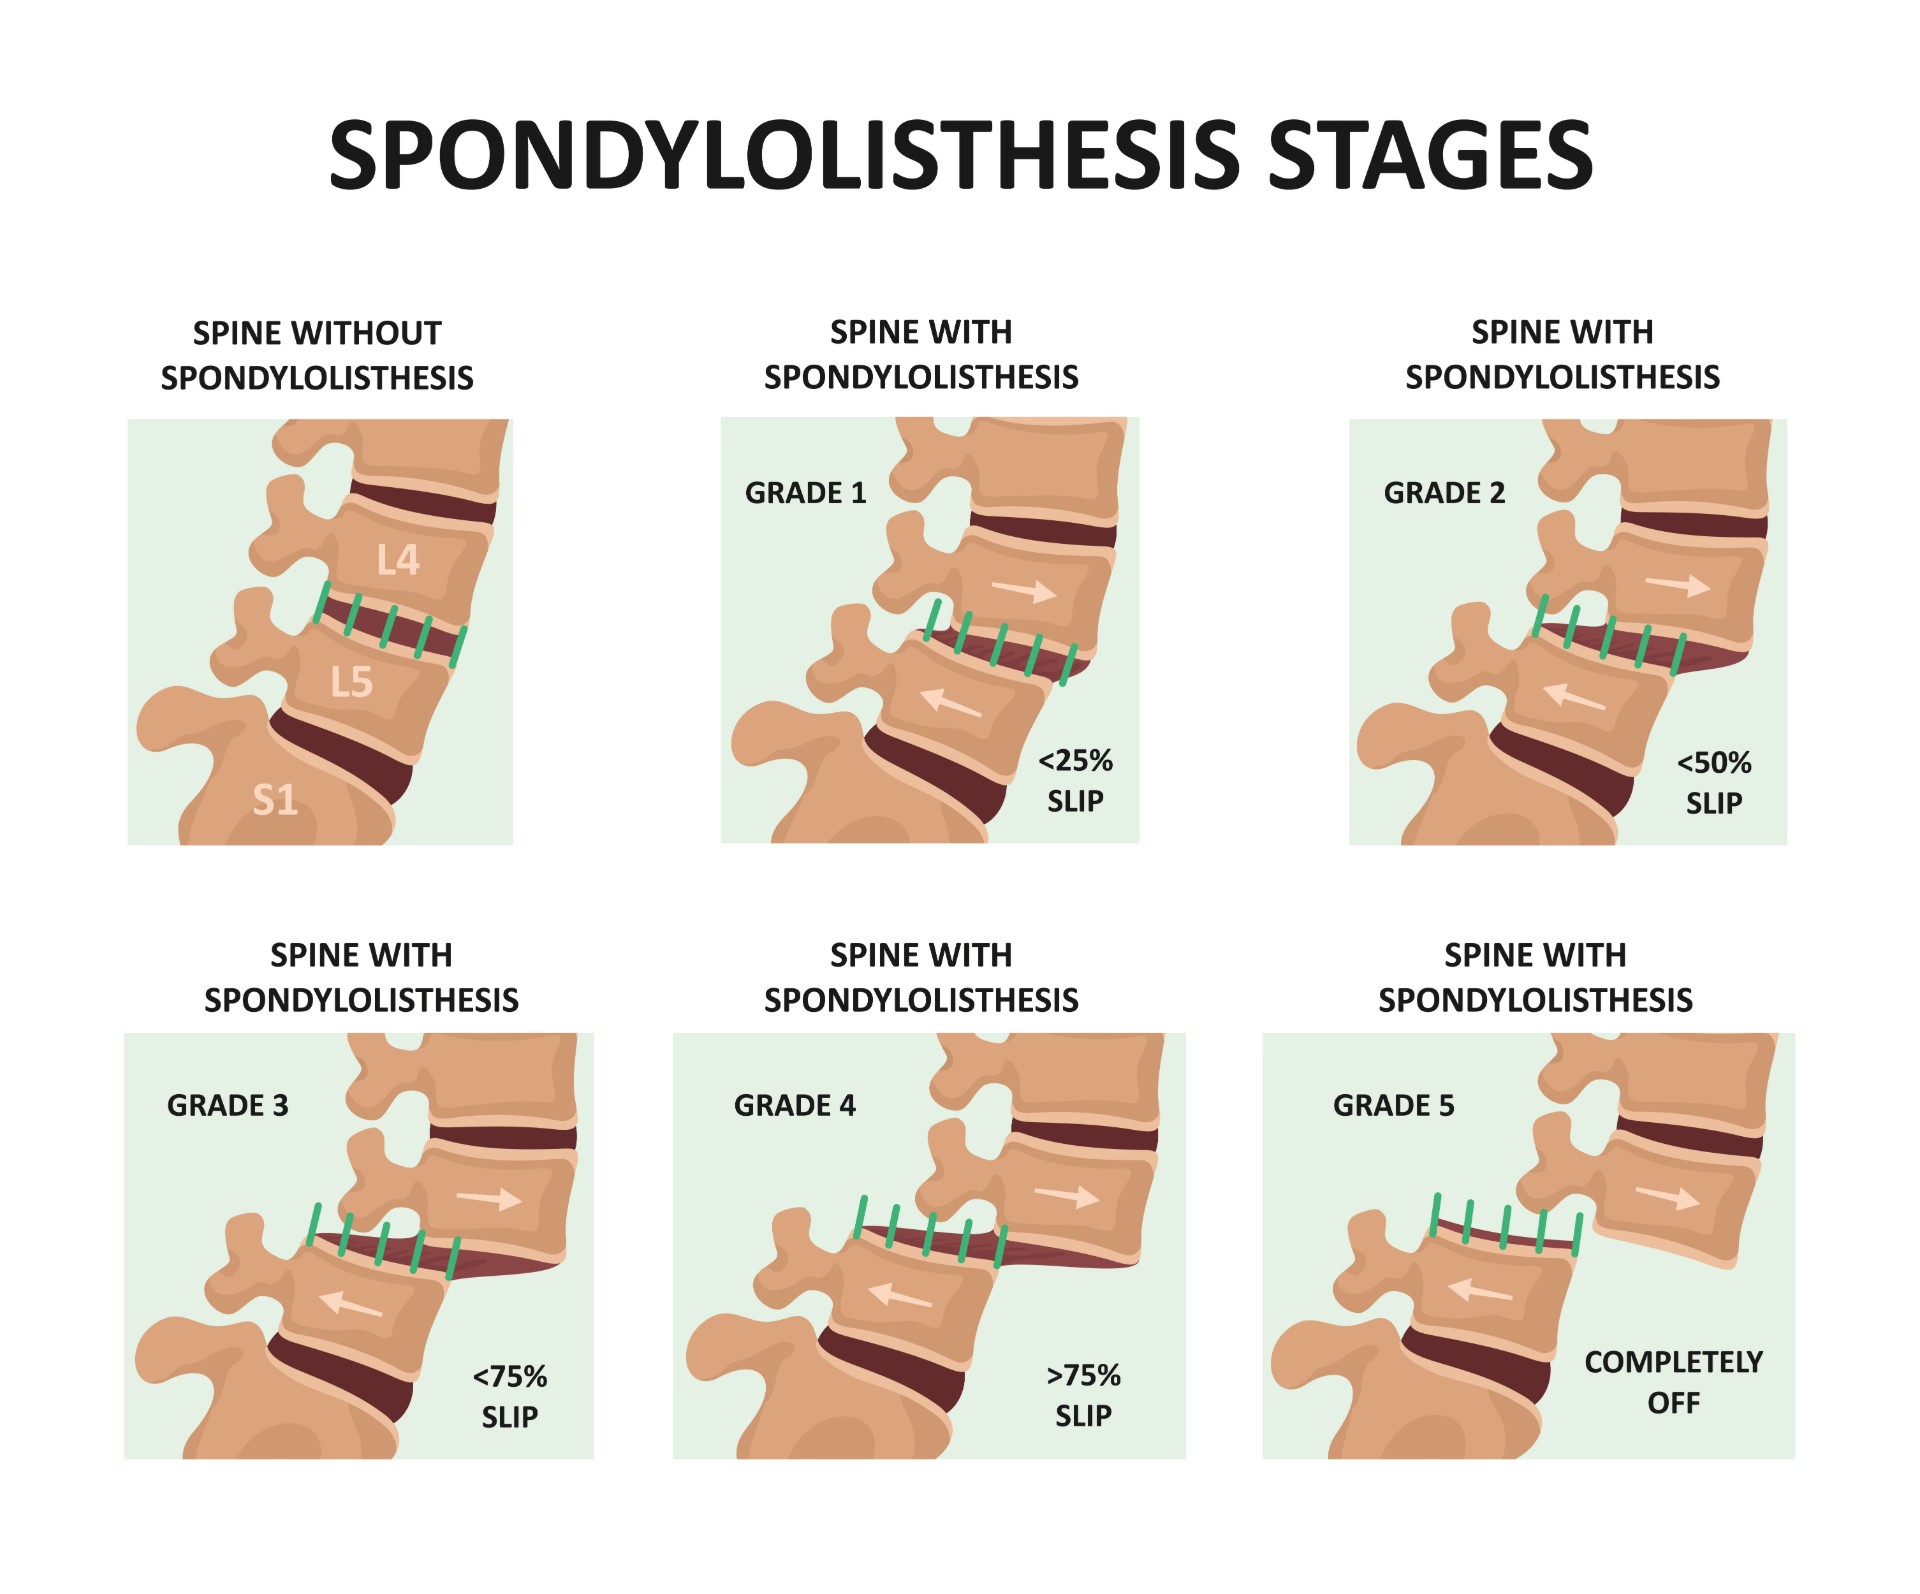 paralysis symptoms spondylolisthesis